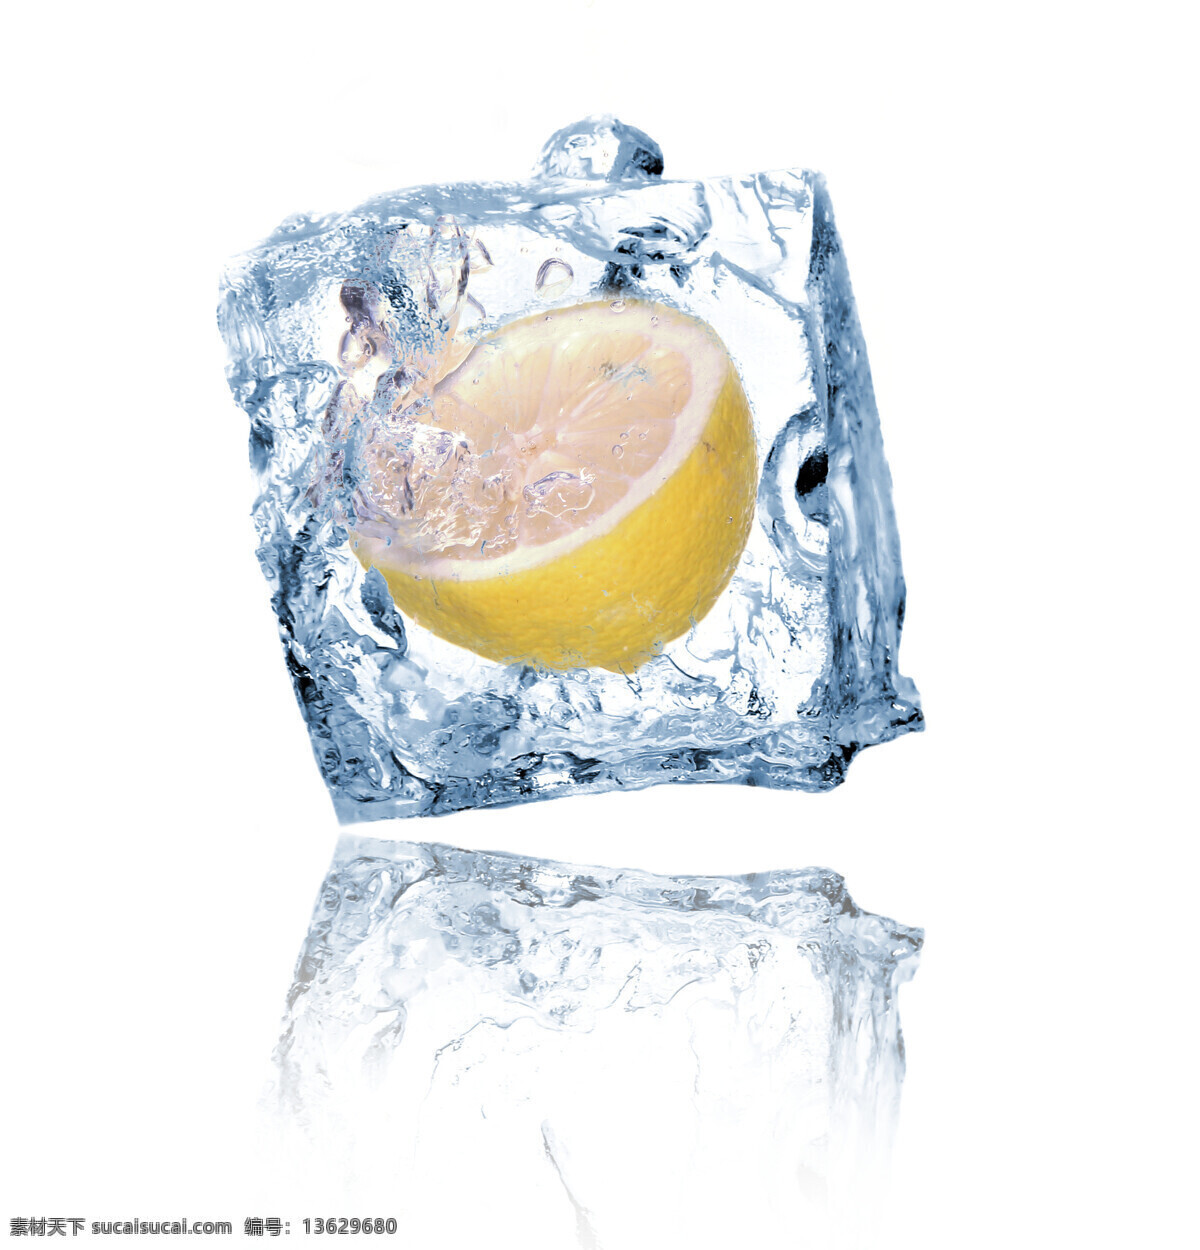 冰块 柠檬 生物世界 水滴 水果 水珠 新鲜水果 冰 中 设计素材 模板下载 冰中柠檬 结冰 psd源文件